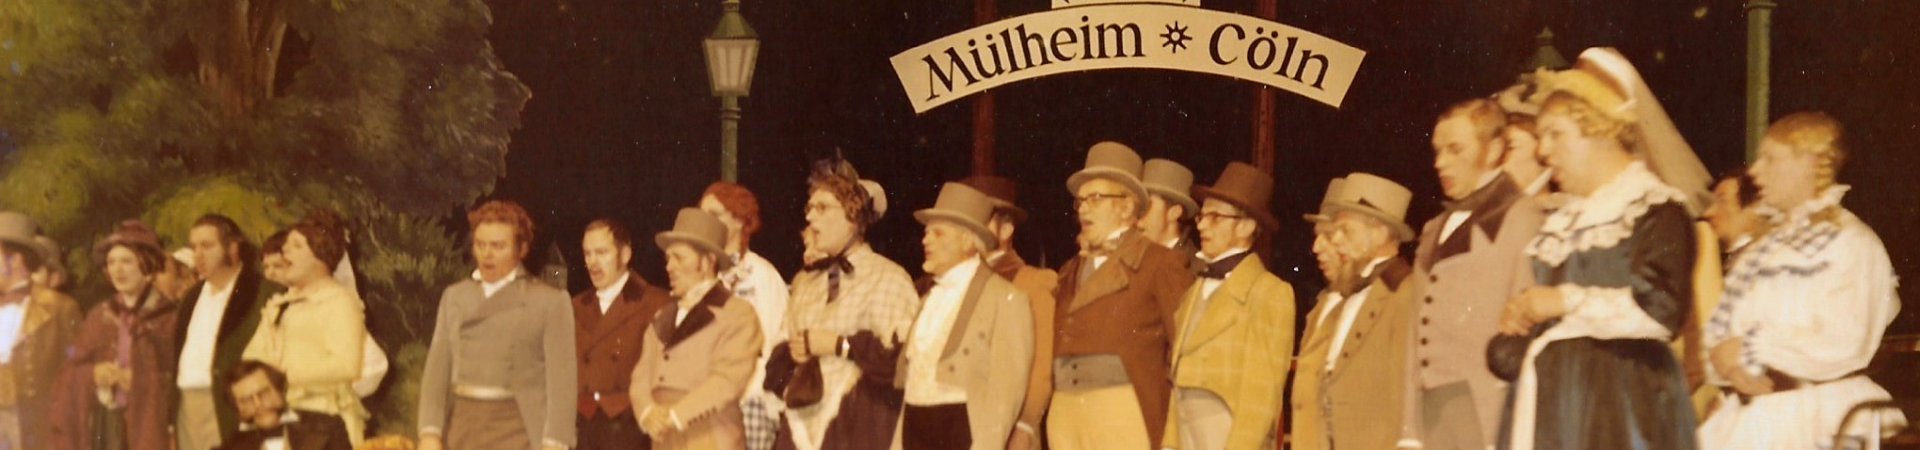 Köbes de Cologne - Divertissementchen 1970 - Chor beim Gesang